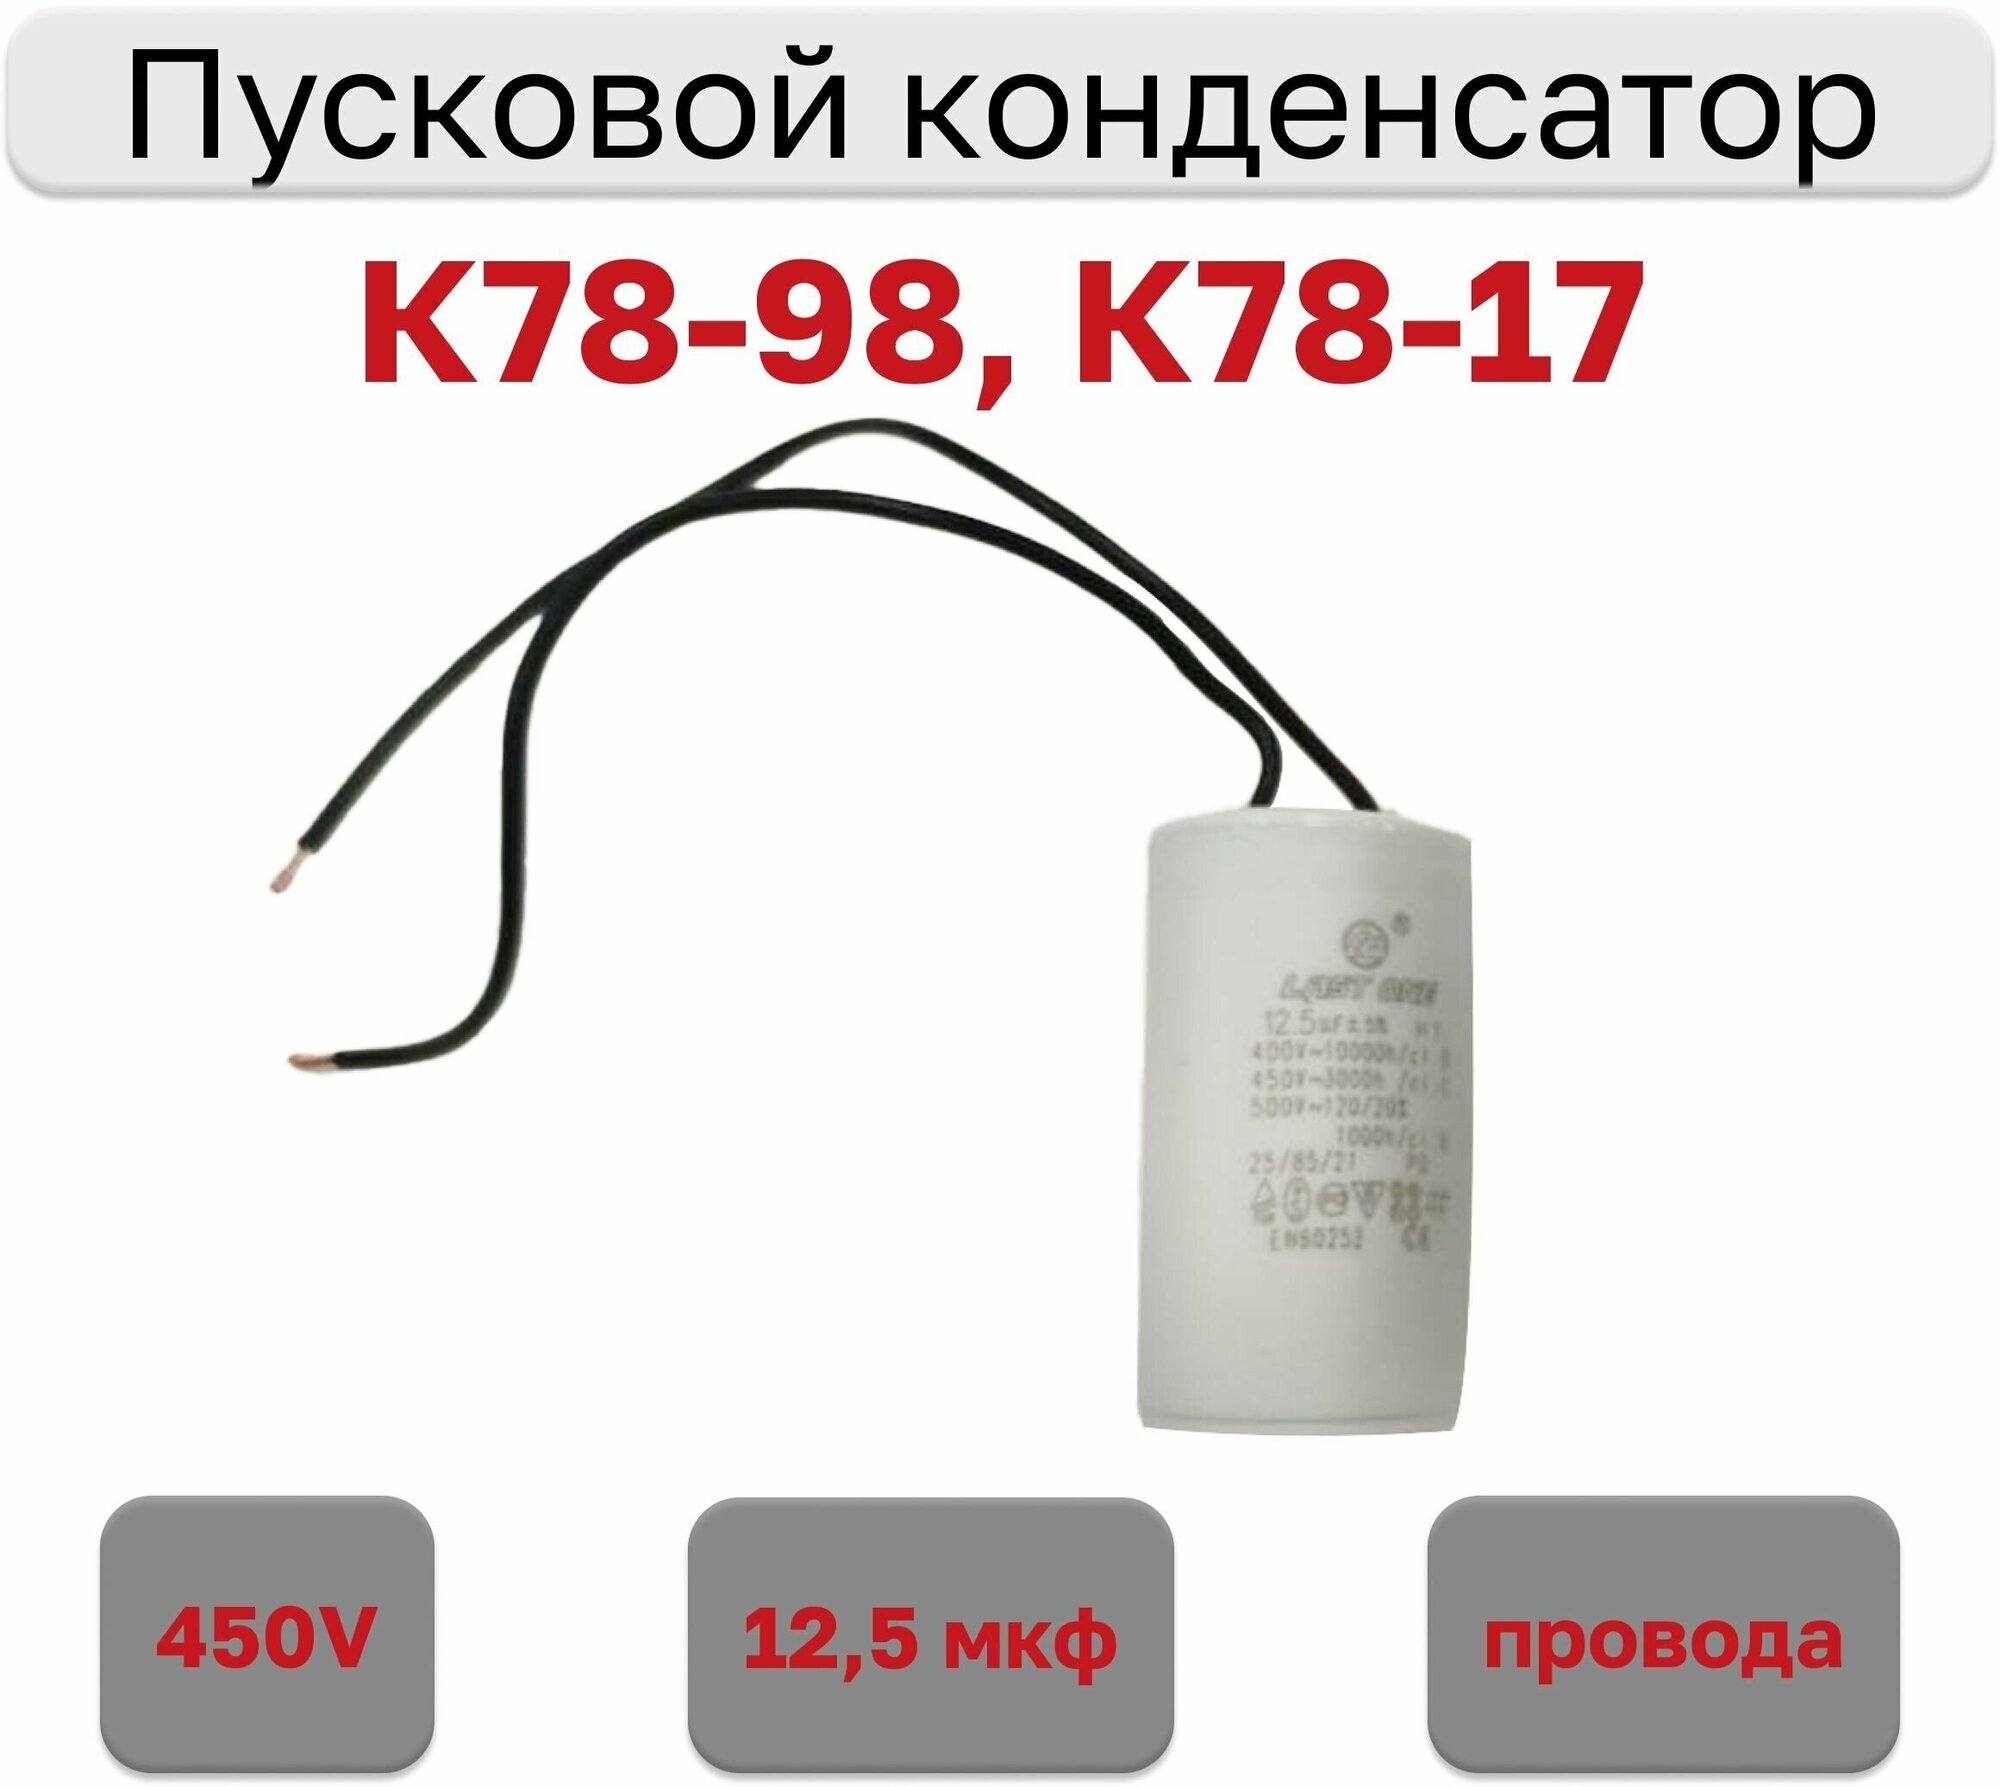 Конденсатор пусковой 12.5мкф х 450В (К78-98 К78-17) с гибкими выводами